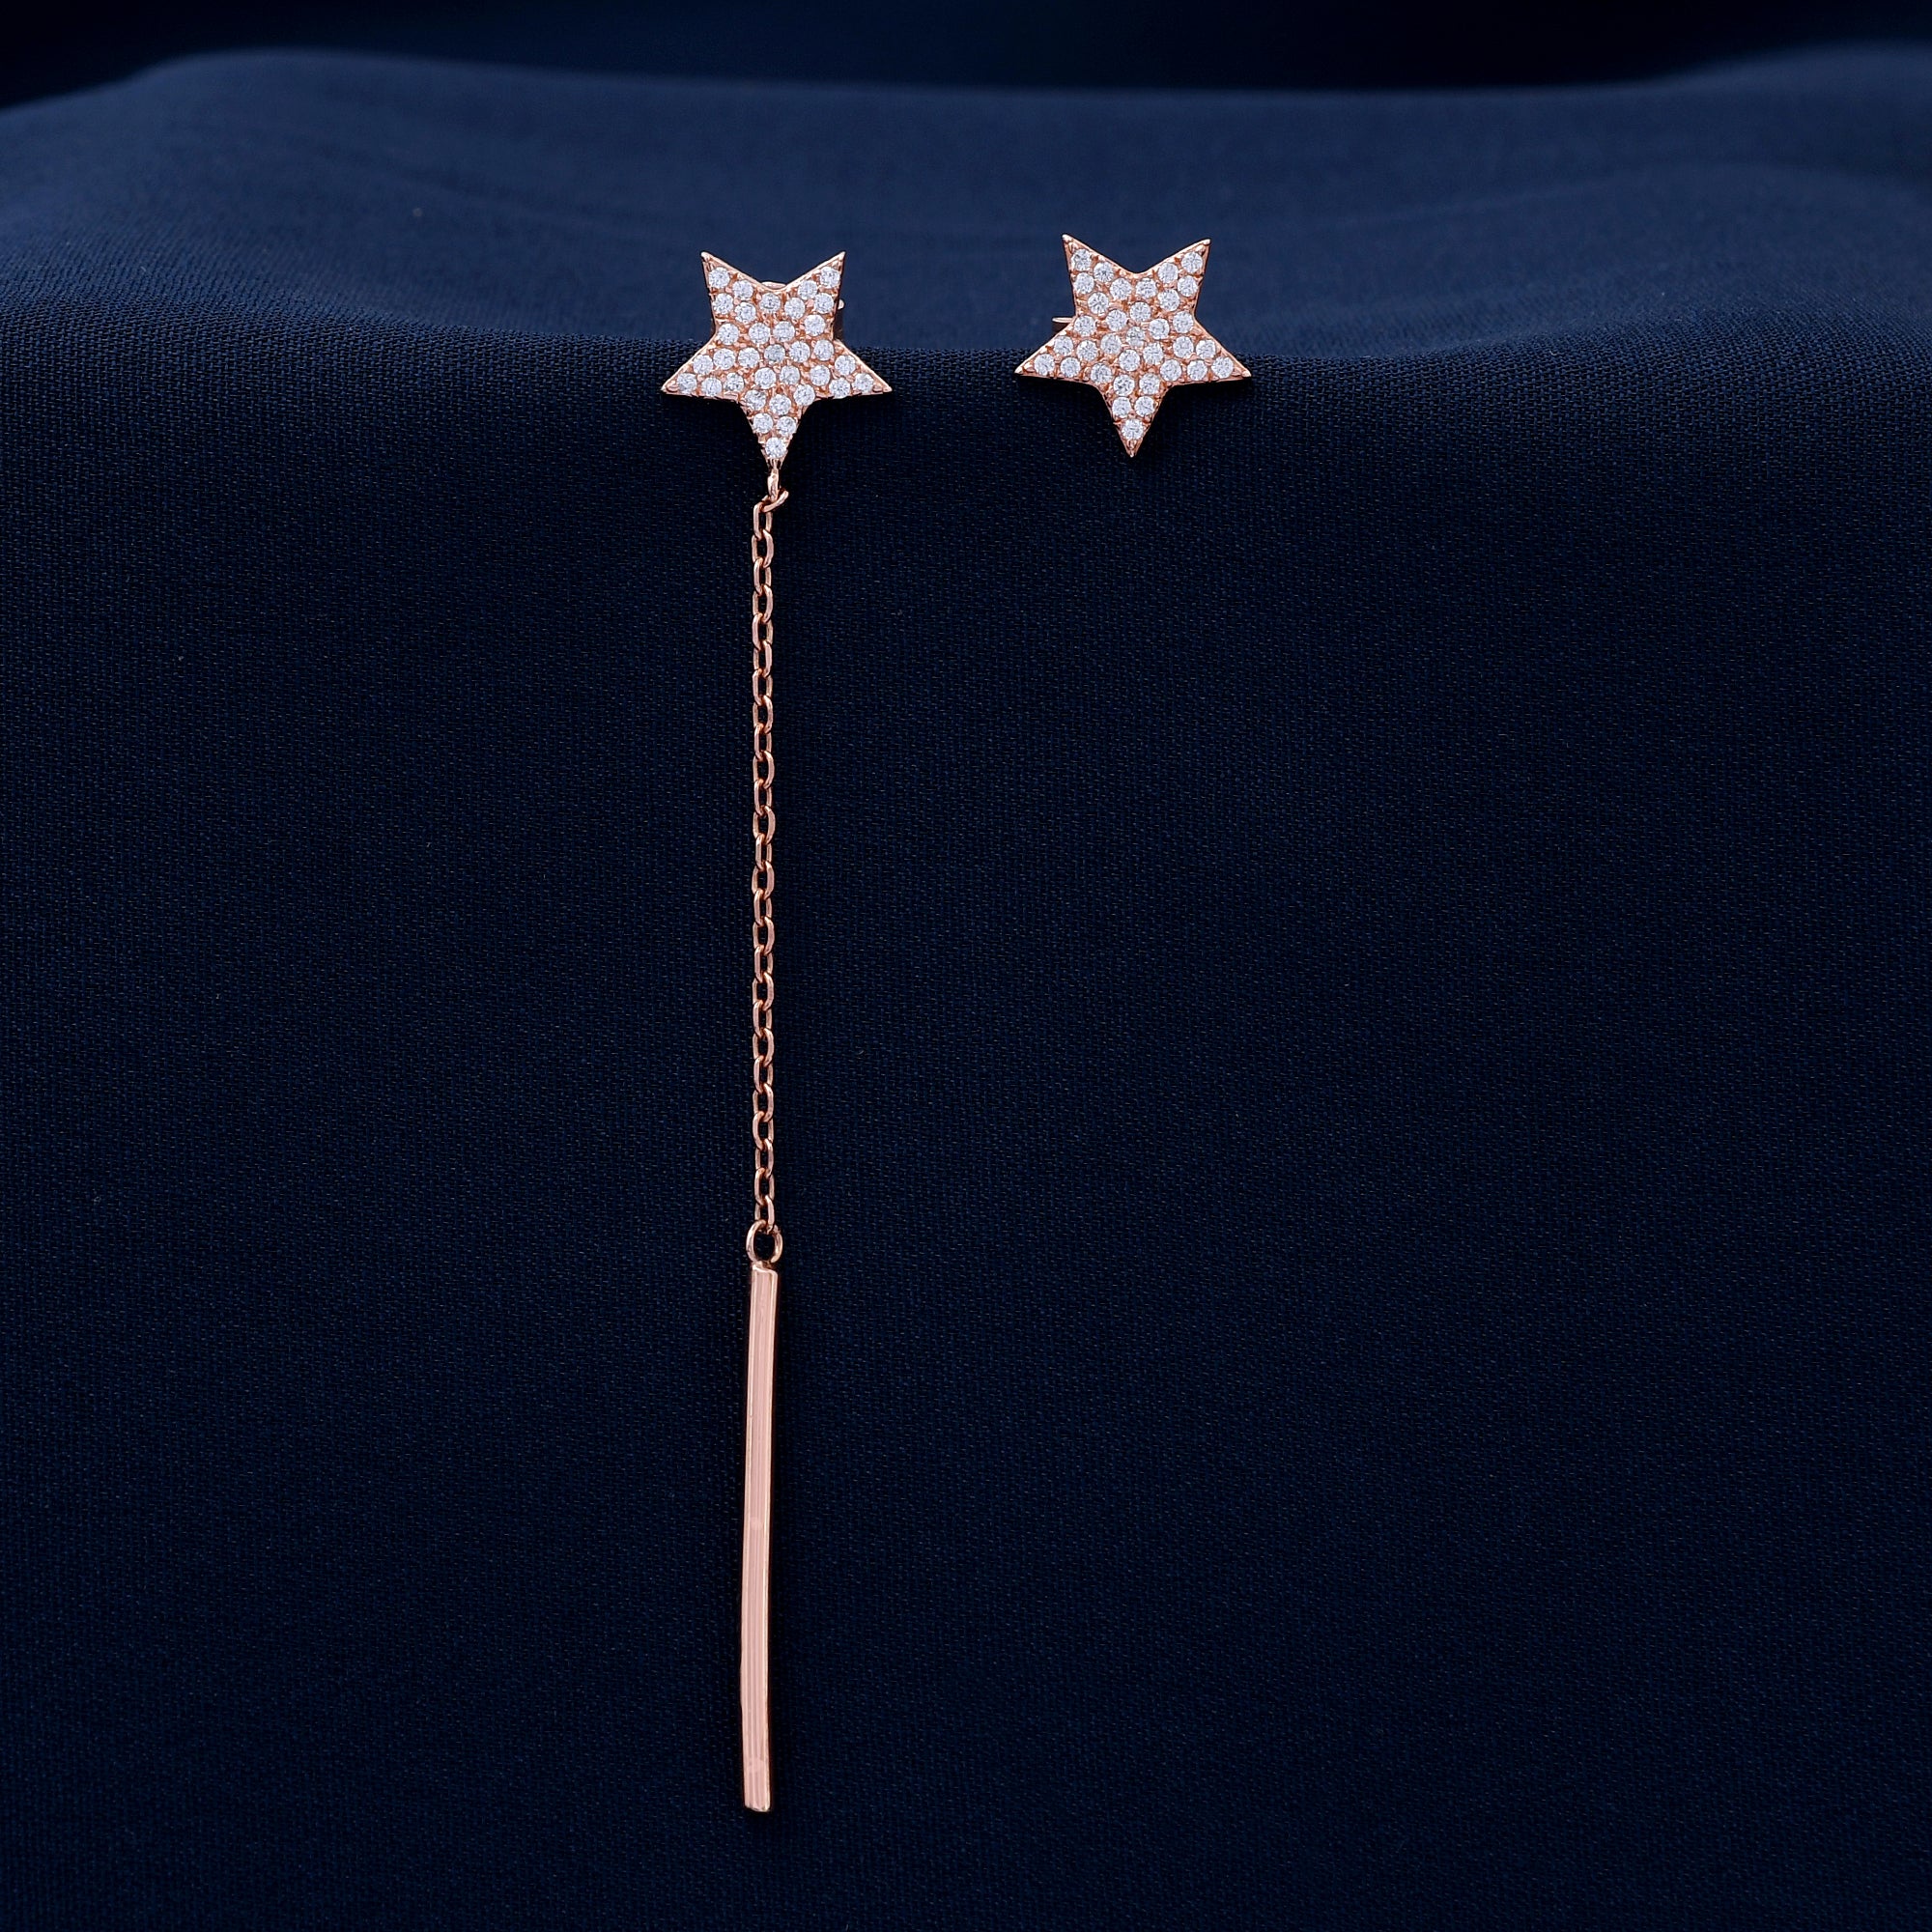 Star Design 925 Sterling Silver Earring